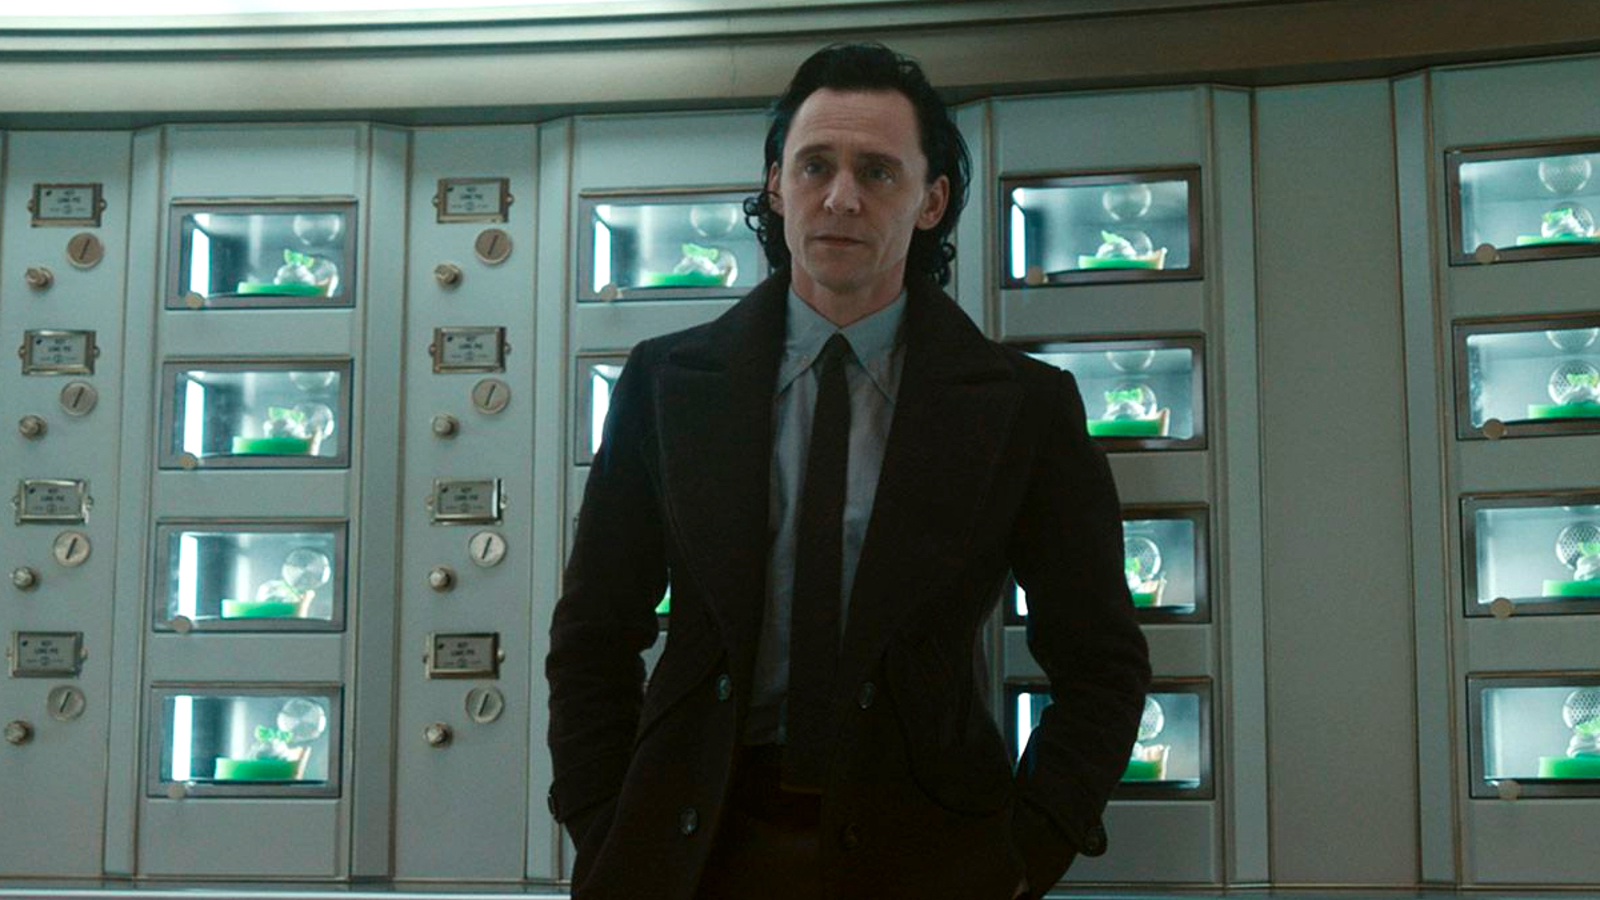 Loki season 2 new official trailer gives a first look at Ke Huy